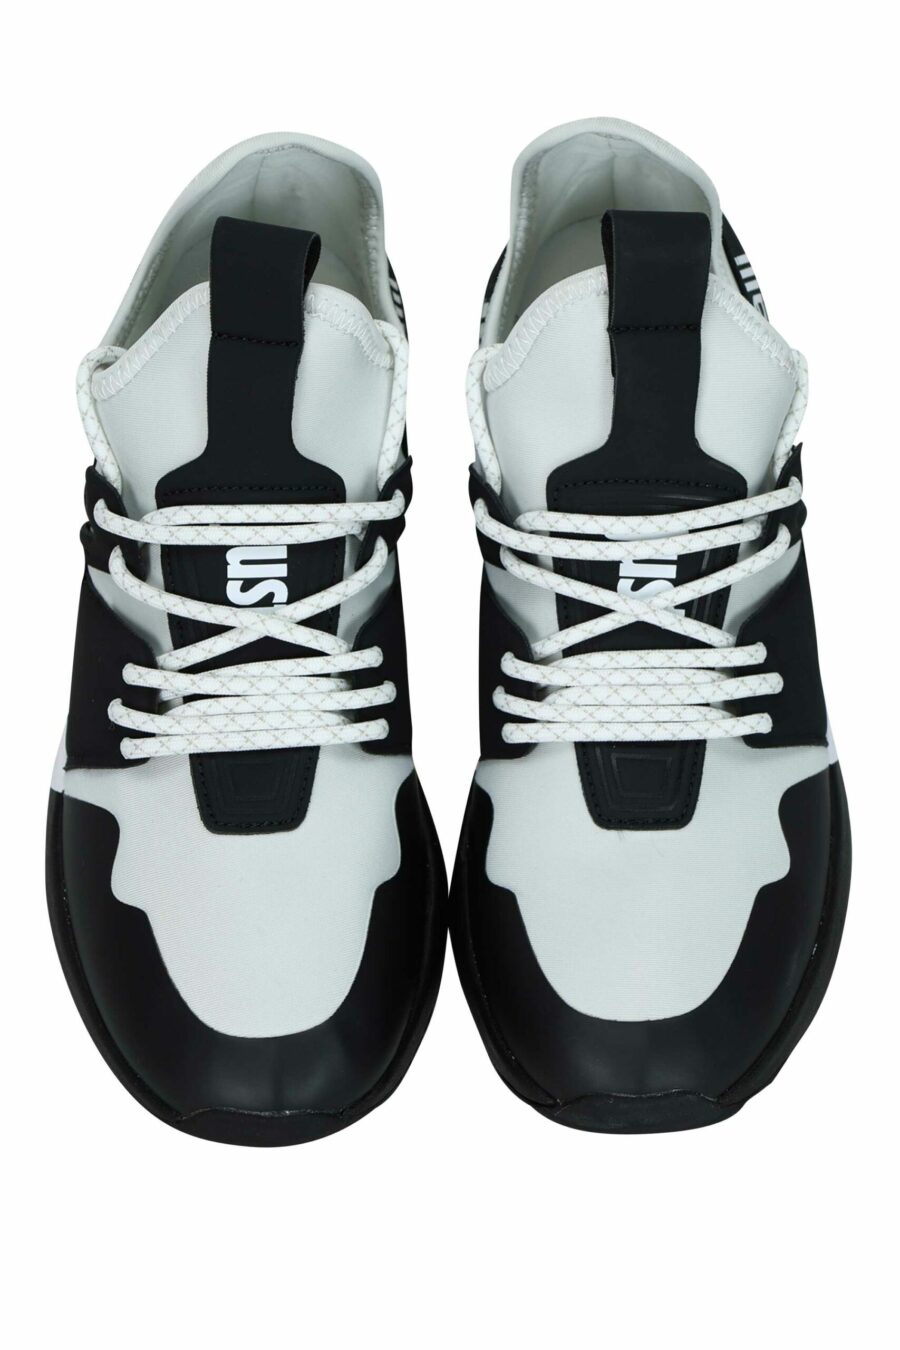 Zapatillas bicolor blancas y negras con logo en cinta - 8052672738127 4 scaled